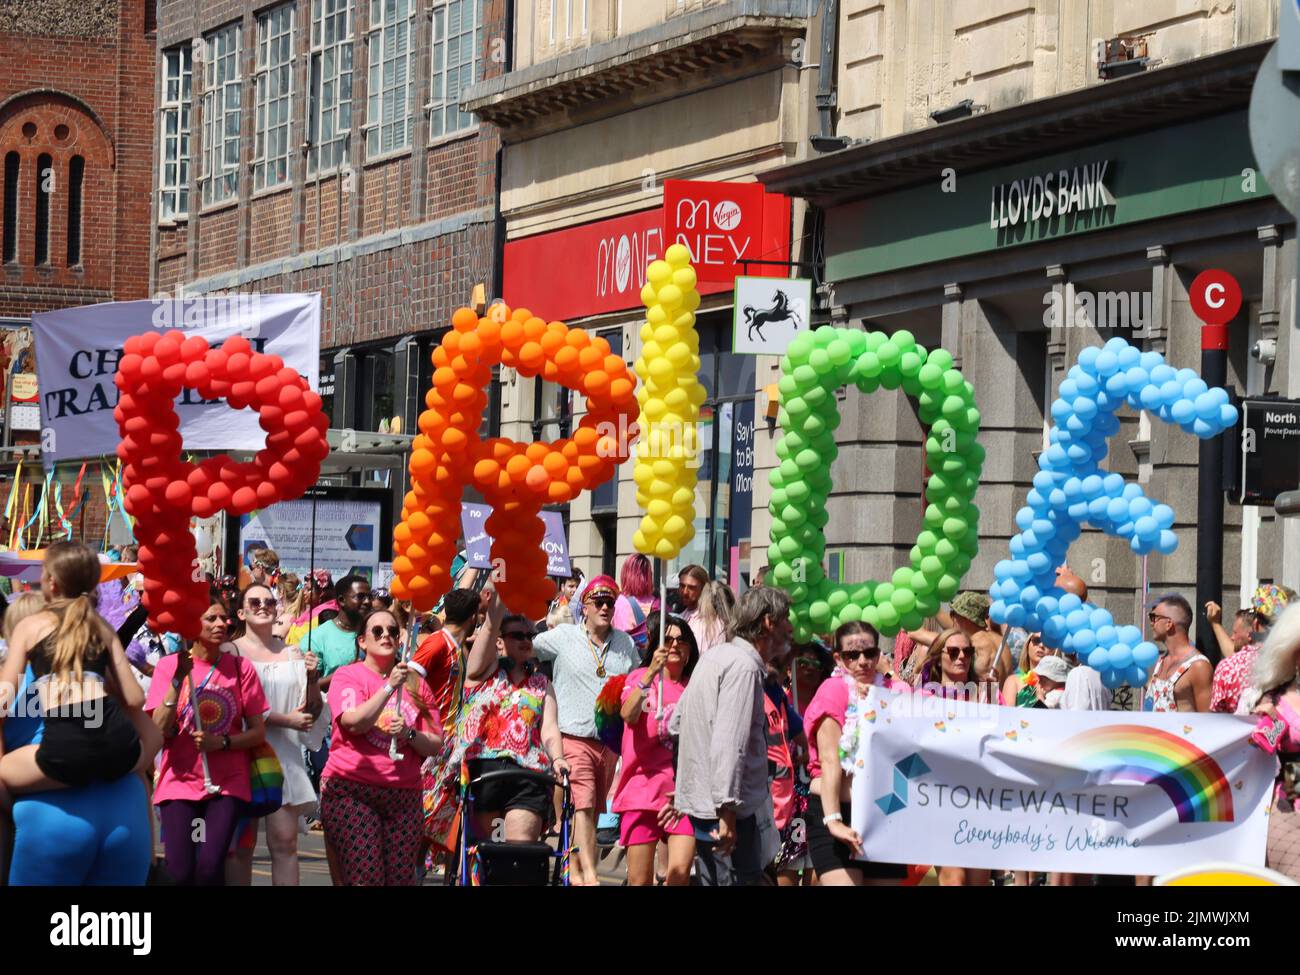 Aujourd'hui, des milliers de personnes se sont tournées dans les rues de Brighton pour le défilé annuel de la fierté qui célèbre son anniversaire de 30th ans. Déclaration de fierté de Brighton après 2 ans de ne pas être en mesure de célébrer la fierté dans notre ville, nous sommes heureux d'annoncer que le thème de la parade communautaire Brighton & Hove Pride LGBTQ+ 2022 du samedi 6th août sera «Amour, protestation et unité» pour le 30th anniversaire. Notre thème a été créé à la suite de commentaires positifs de groupes communautaires et afin de poursuivre nos objectifs de campagne. Banque D'Images